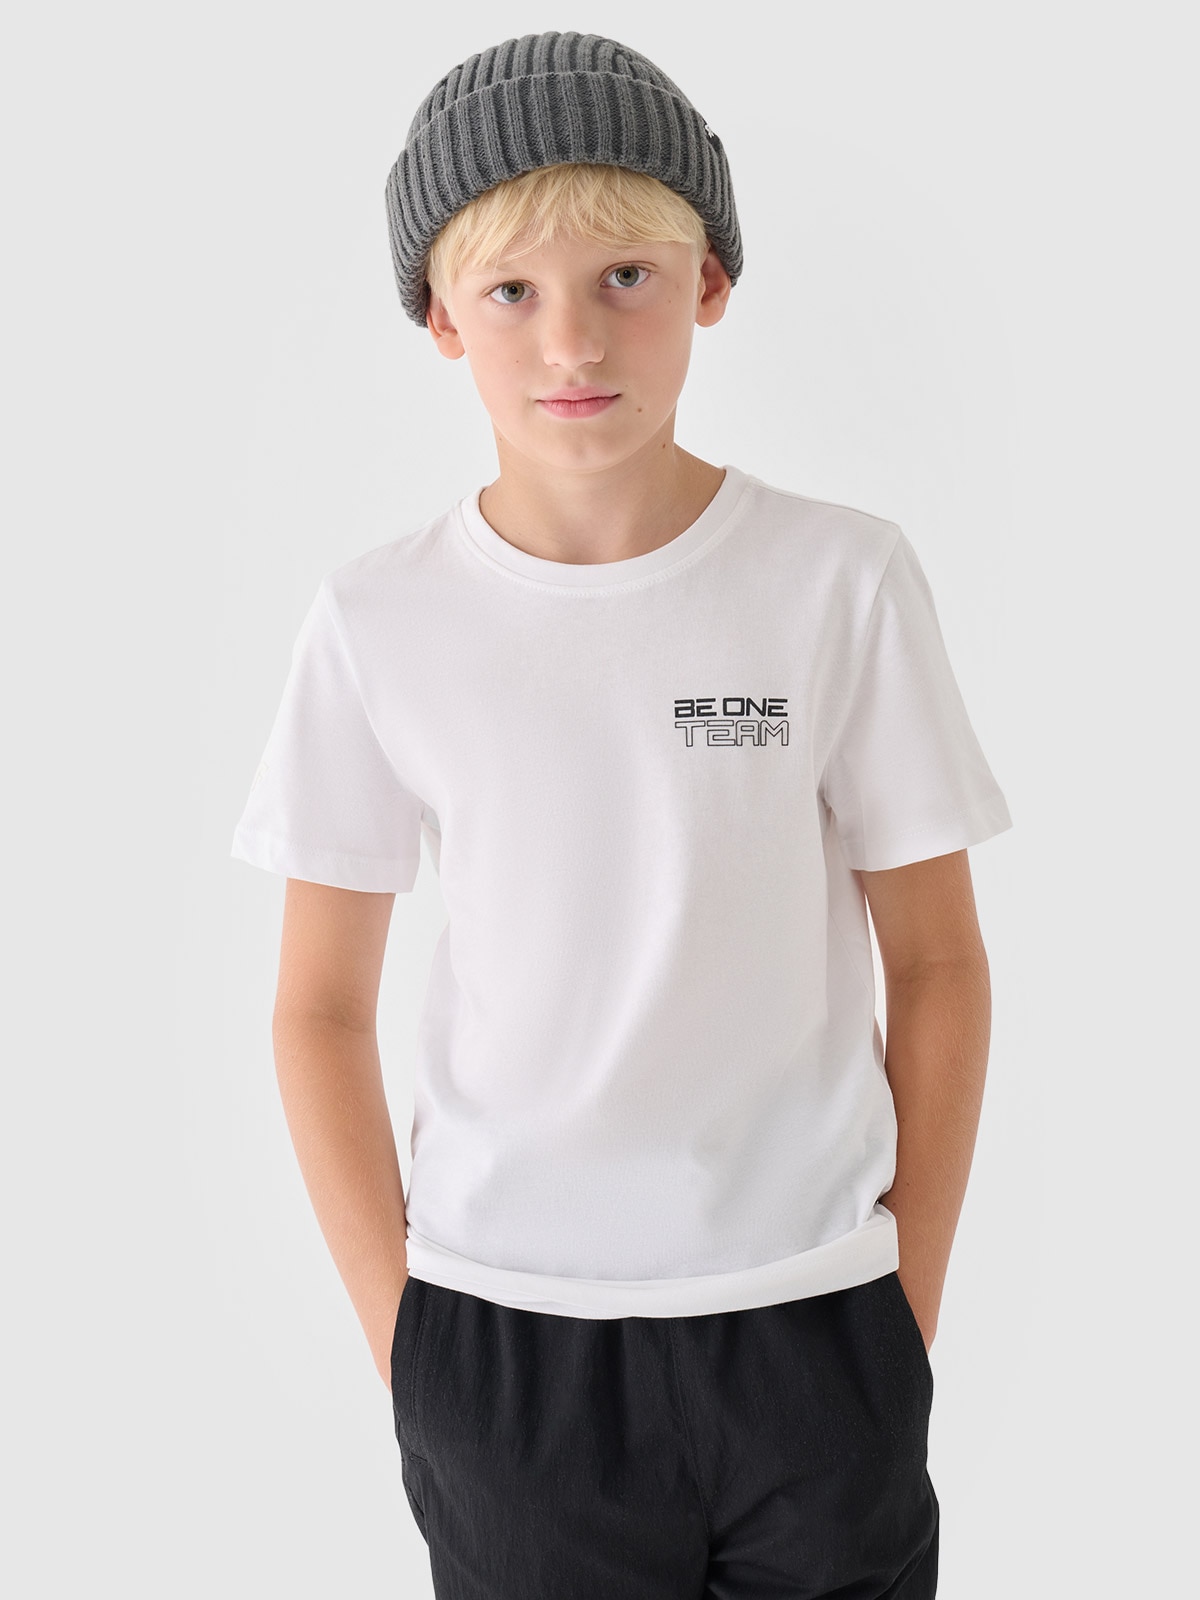 Chlapecké tričko s potiskem - bílé